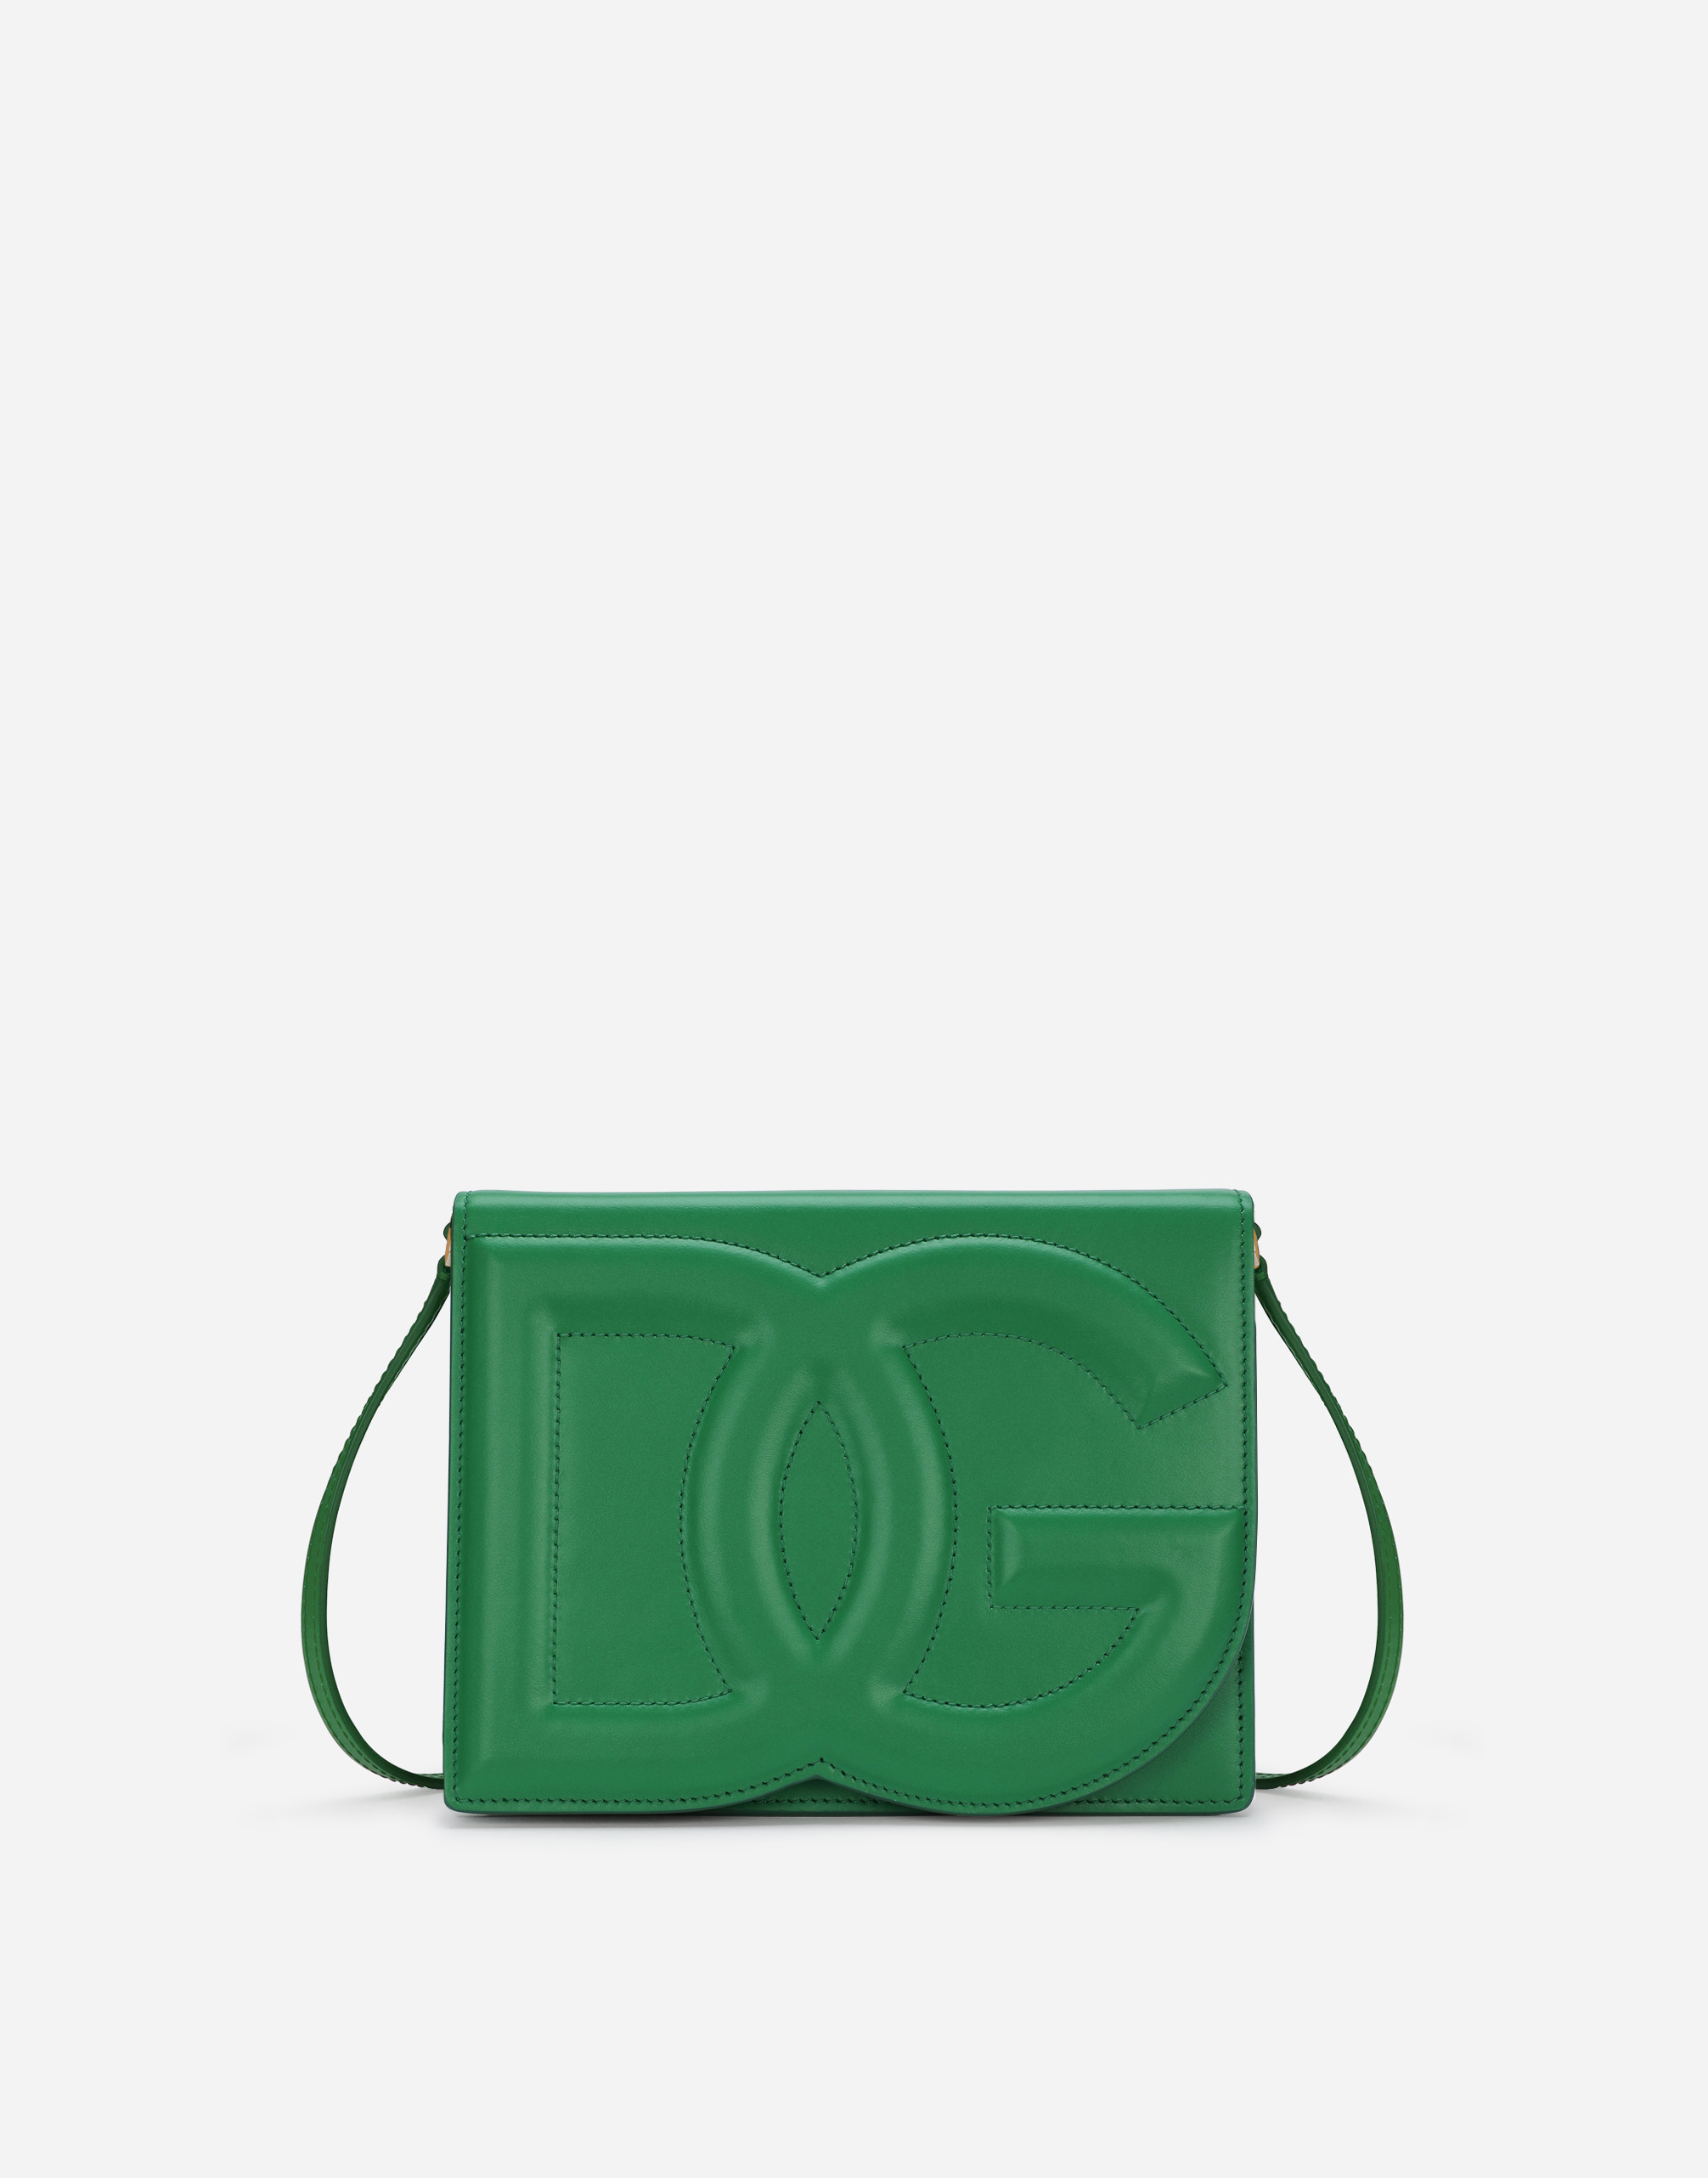 Dolce & Gabbana Calfskin Dg Logo Crossbody Bag In Green